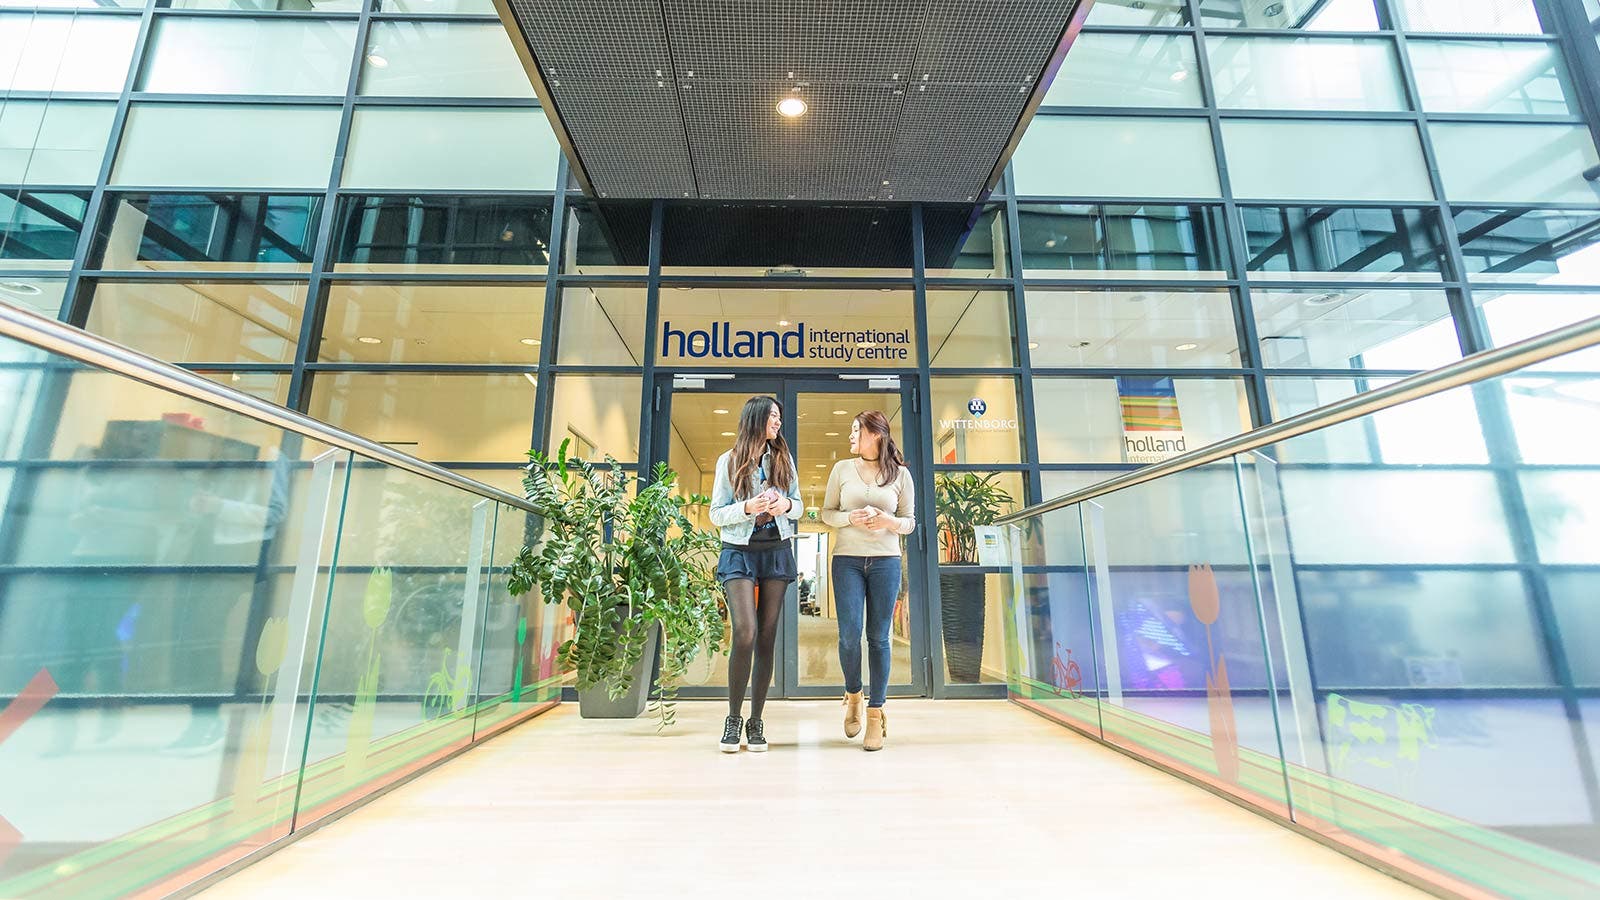 荷兰国际学习中心窗口中植物的倒影